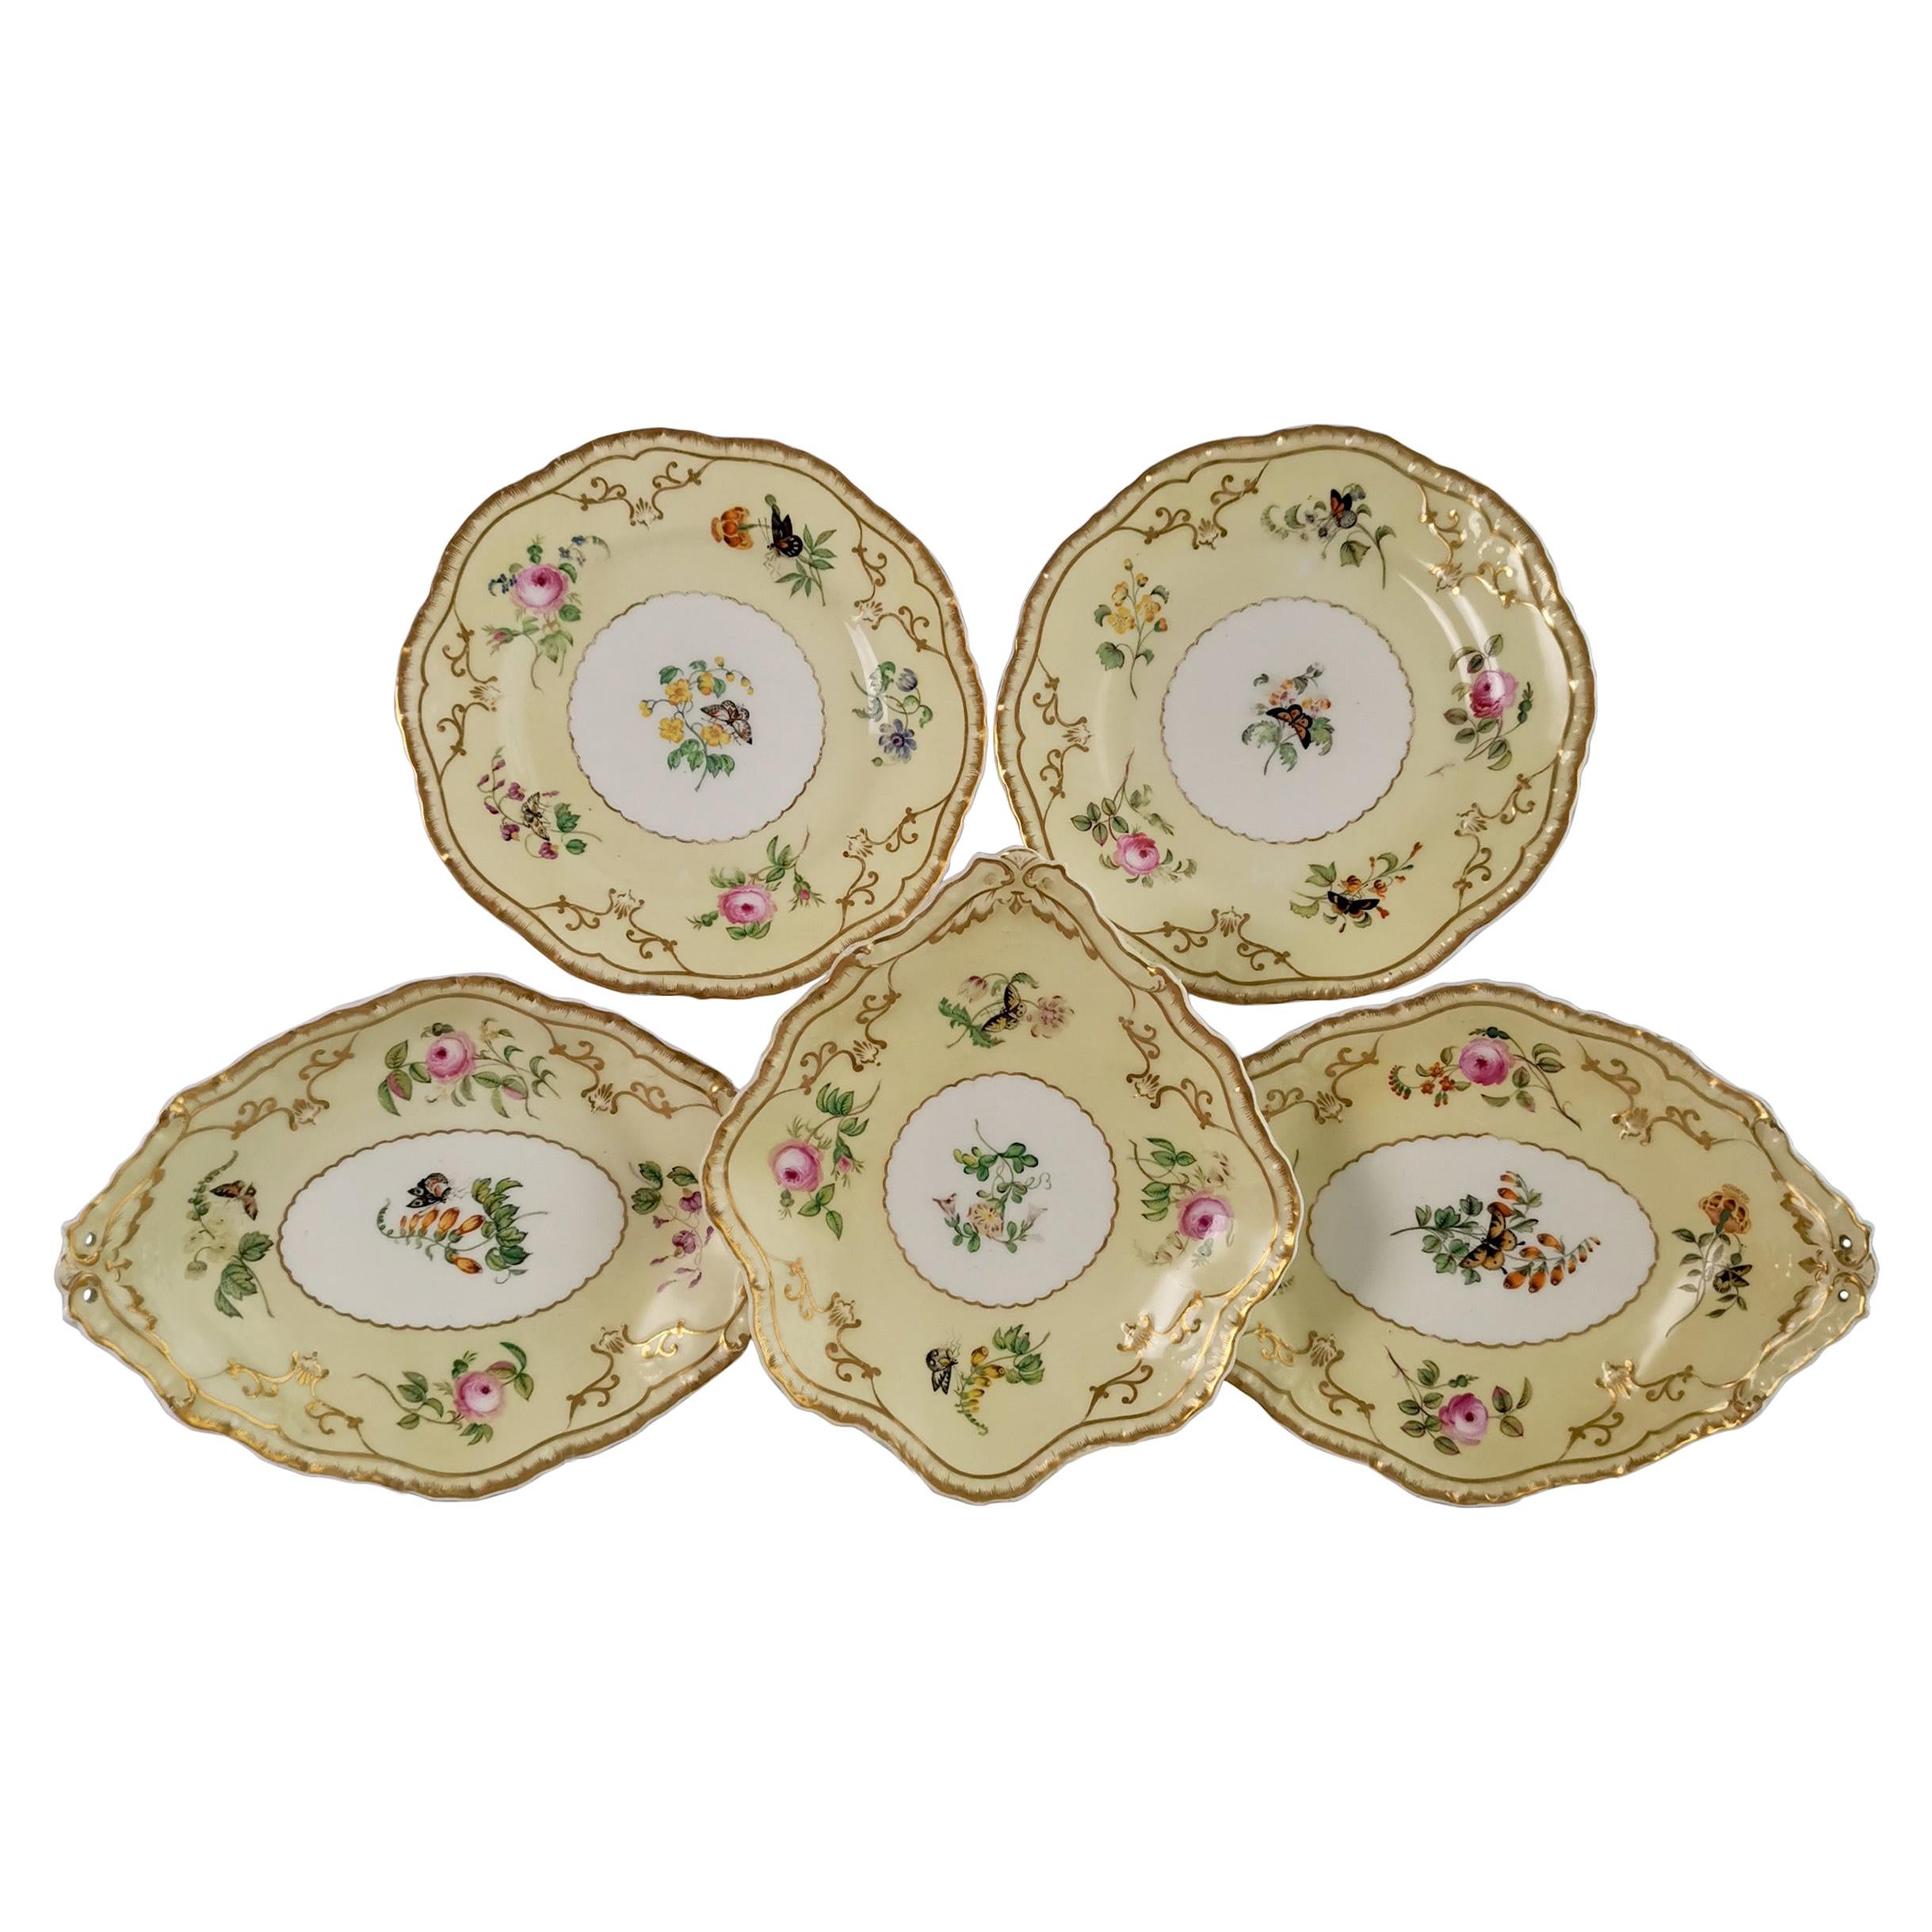 Copeland & Garrett Porcelain Dessert Set, Yellow with Butterflies, 1833-1847